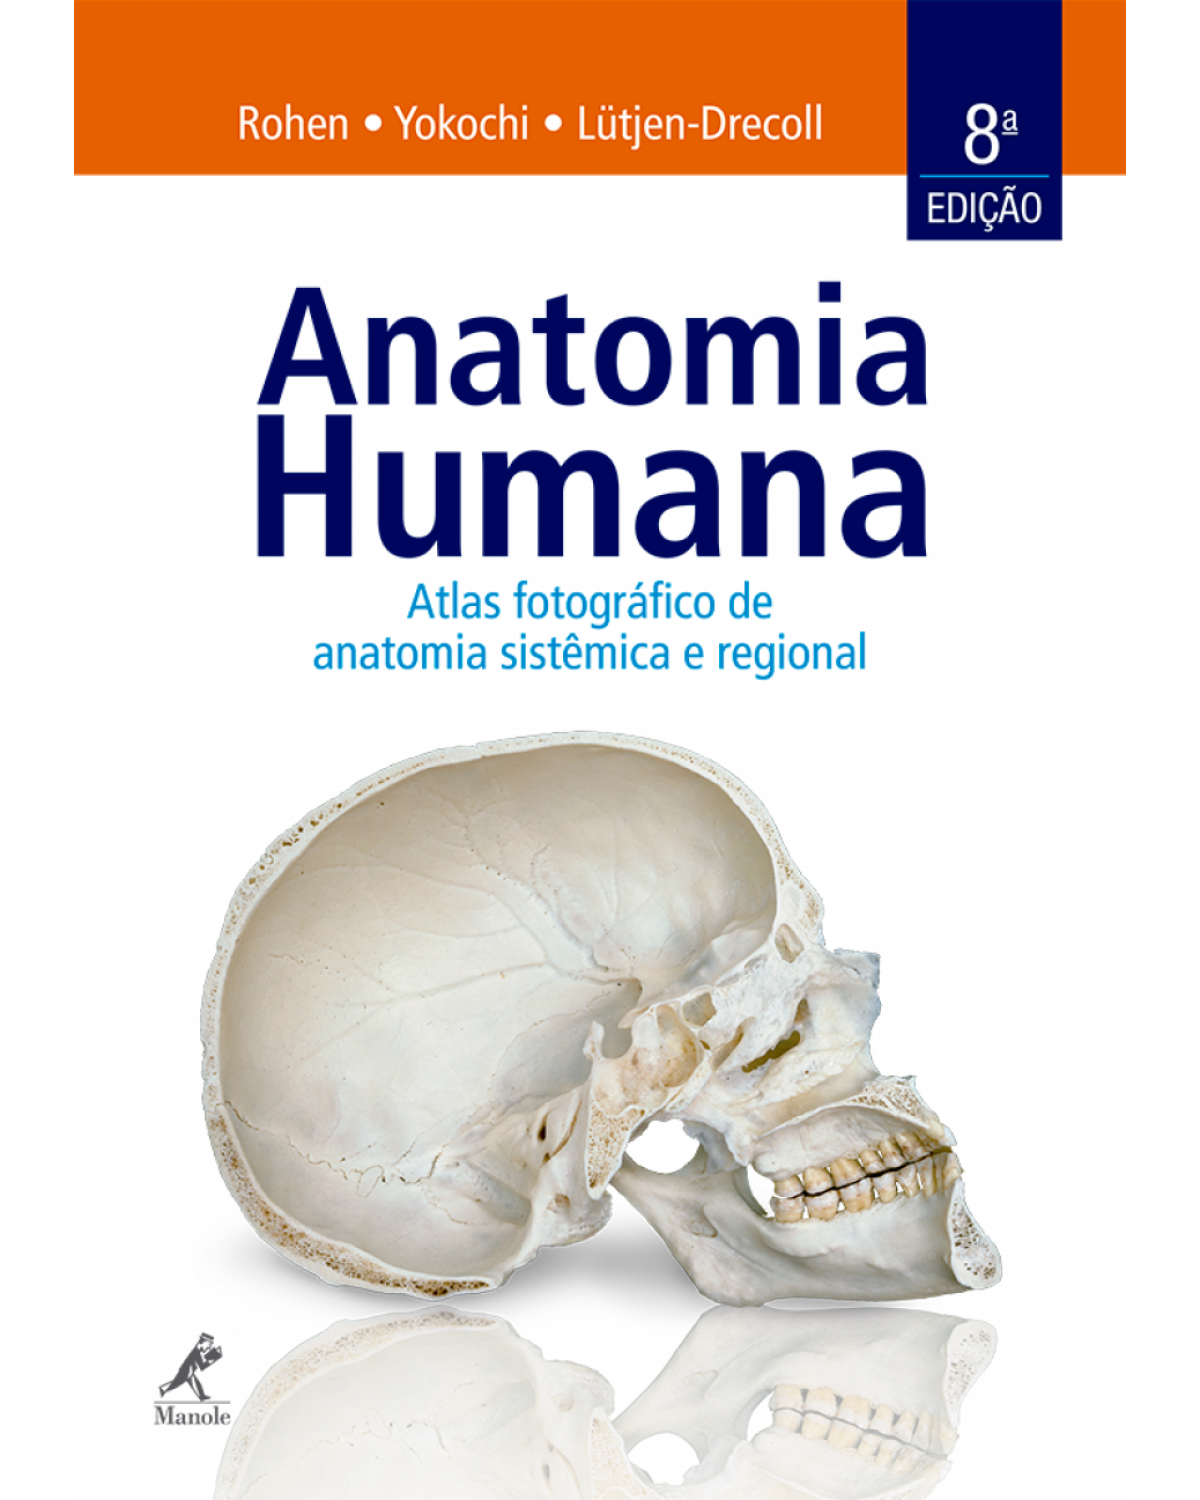 Anatomia humana - Atlas fotográfico de anatomia sistêmica e regional - 8ª Edição | 2016